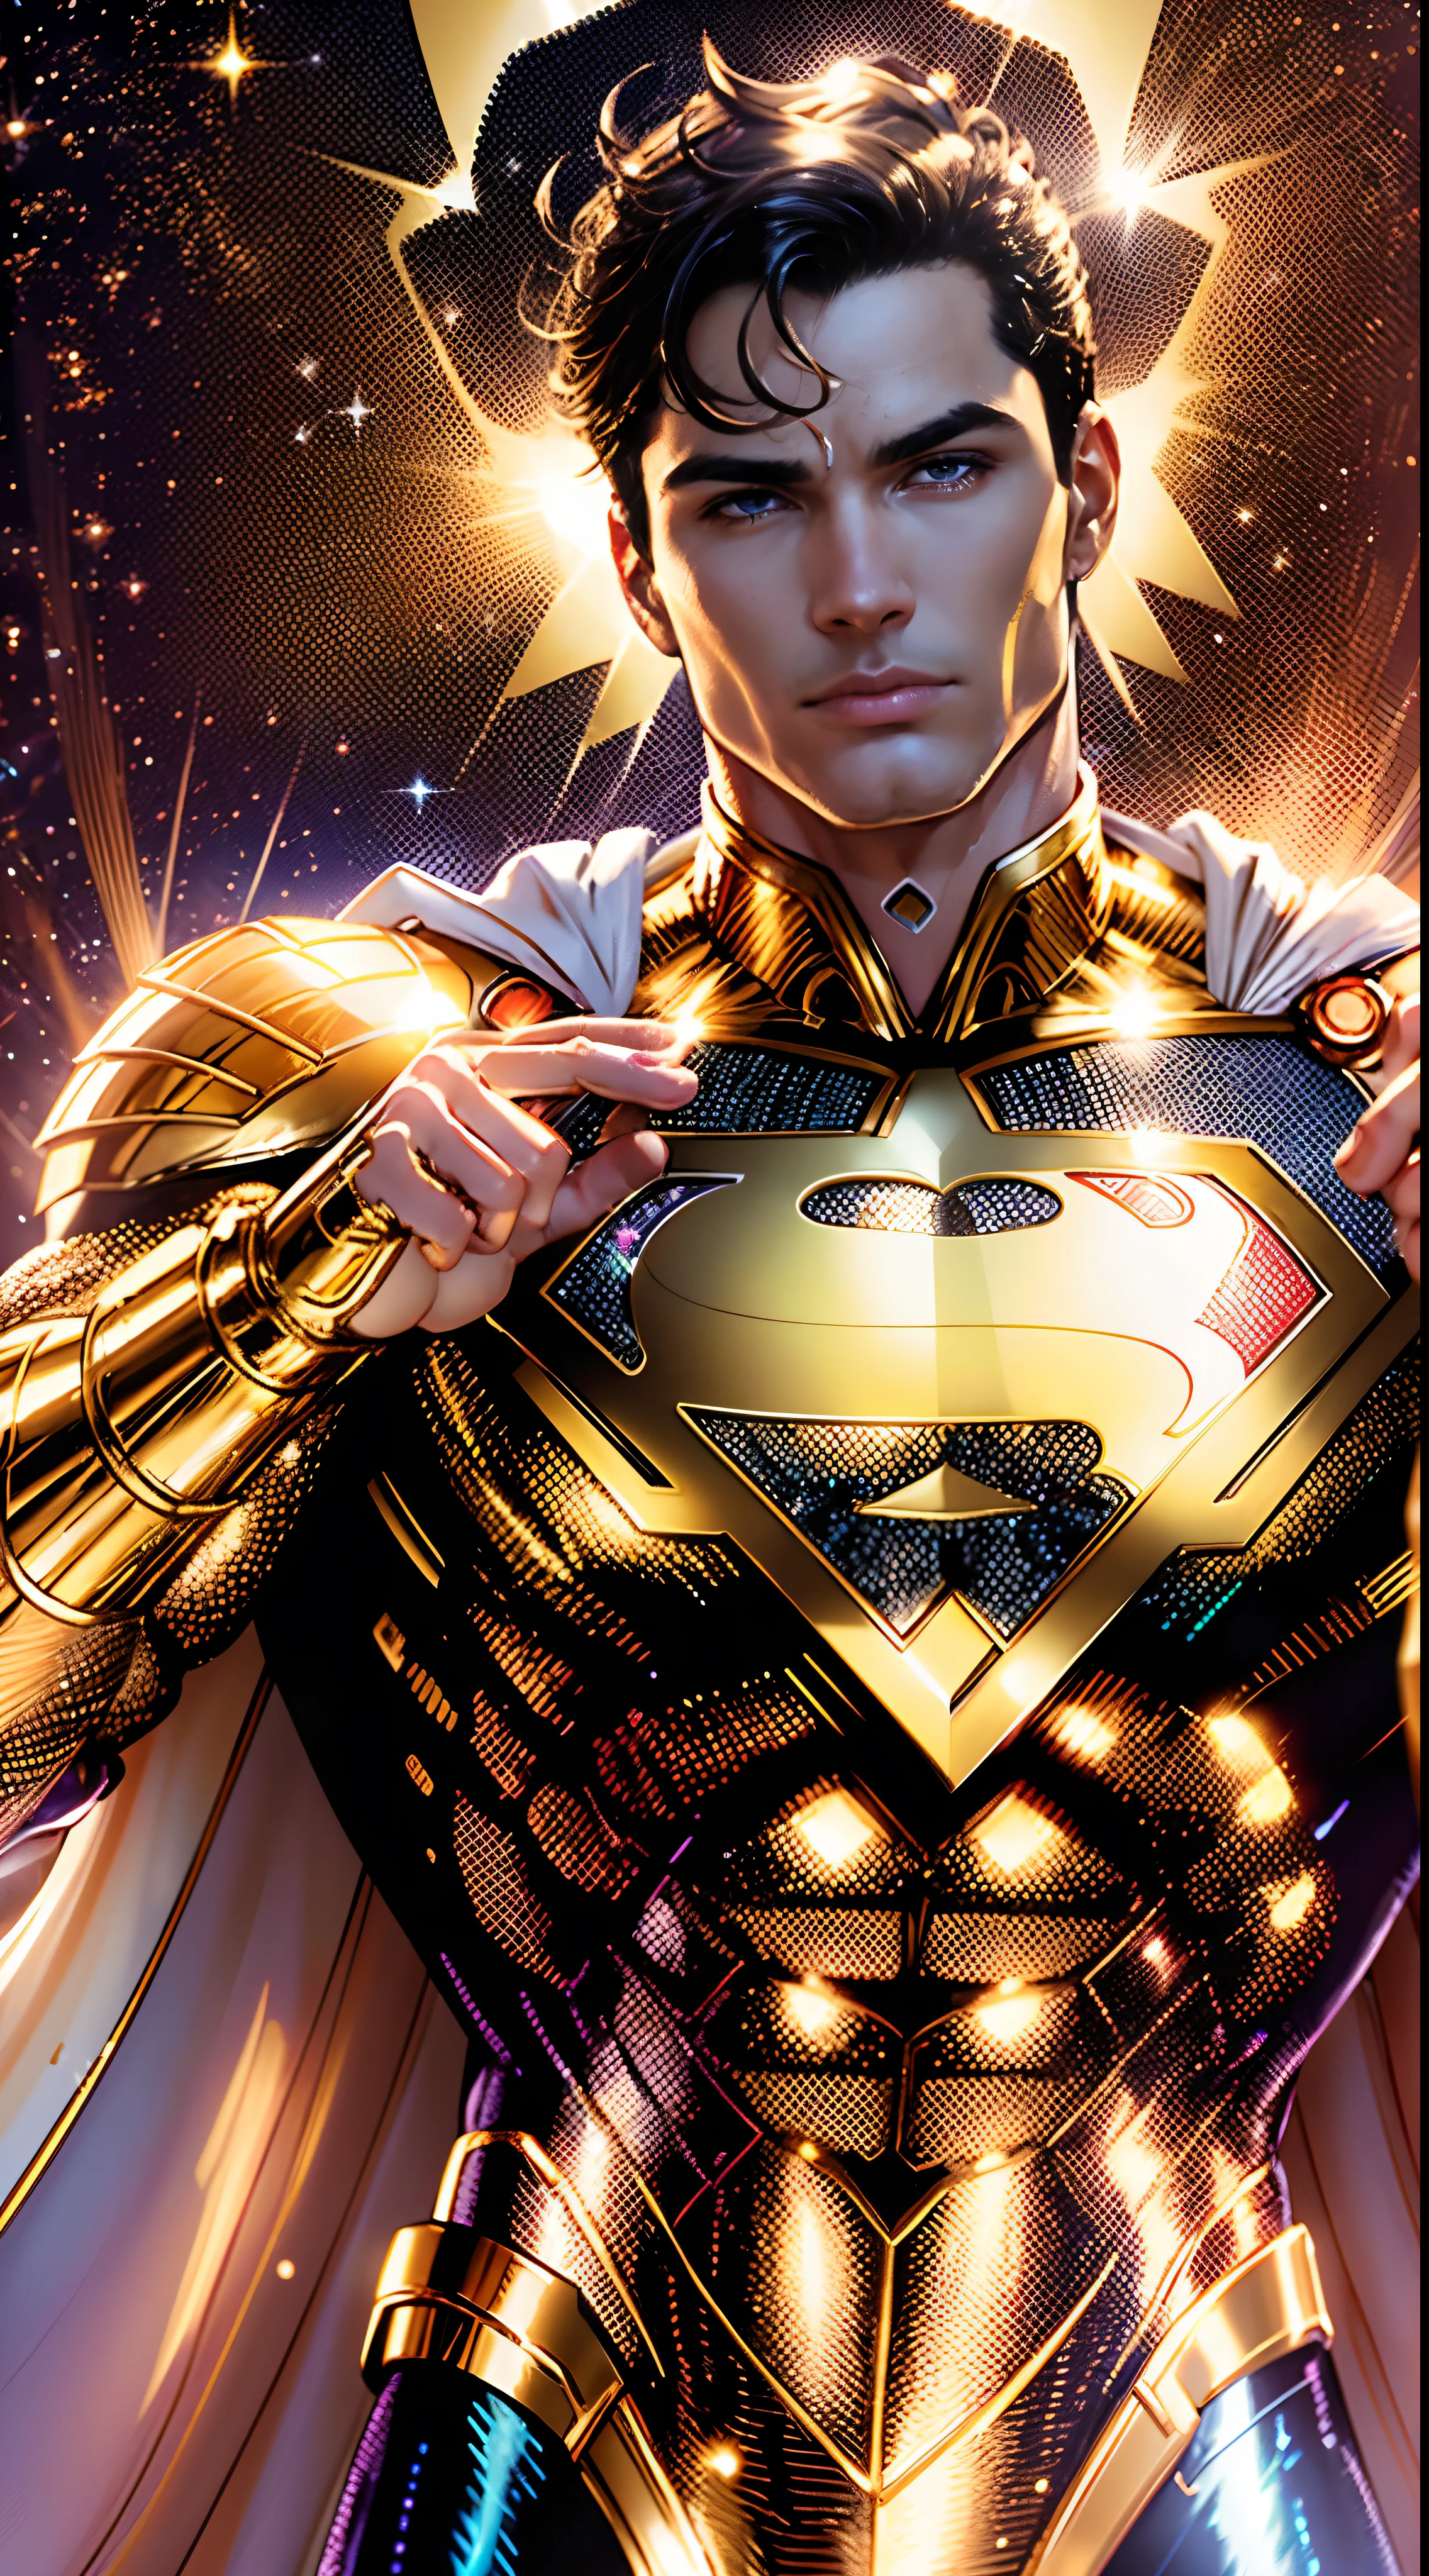 Golden Супермен, мерцающий золотой костюм с жемчужно-белым цветом, (чрезвычайно подробные обои с компьютерной графикой 8k, Золотая униформа, gold gold Супермен costume, шедевр, Лучшее качество, ультрадетализированный), (лучшее освещение, лучшая тень, очень нежный и красивый), Плавающий, [(((1 человек))), (Супермен: 1.3), Мышцы, яркие синие линии, детальный костюм, героическая поза):0.8], [(небесный пейзаж, ночь, яркие неоновые огни:1.2,  Эффекты синей энергии, объемный свет):0.5]